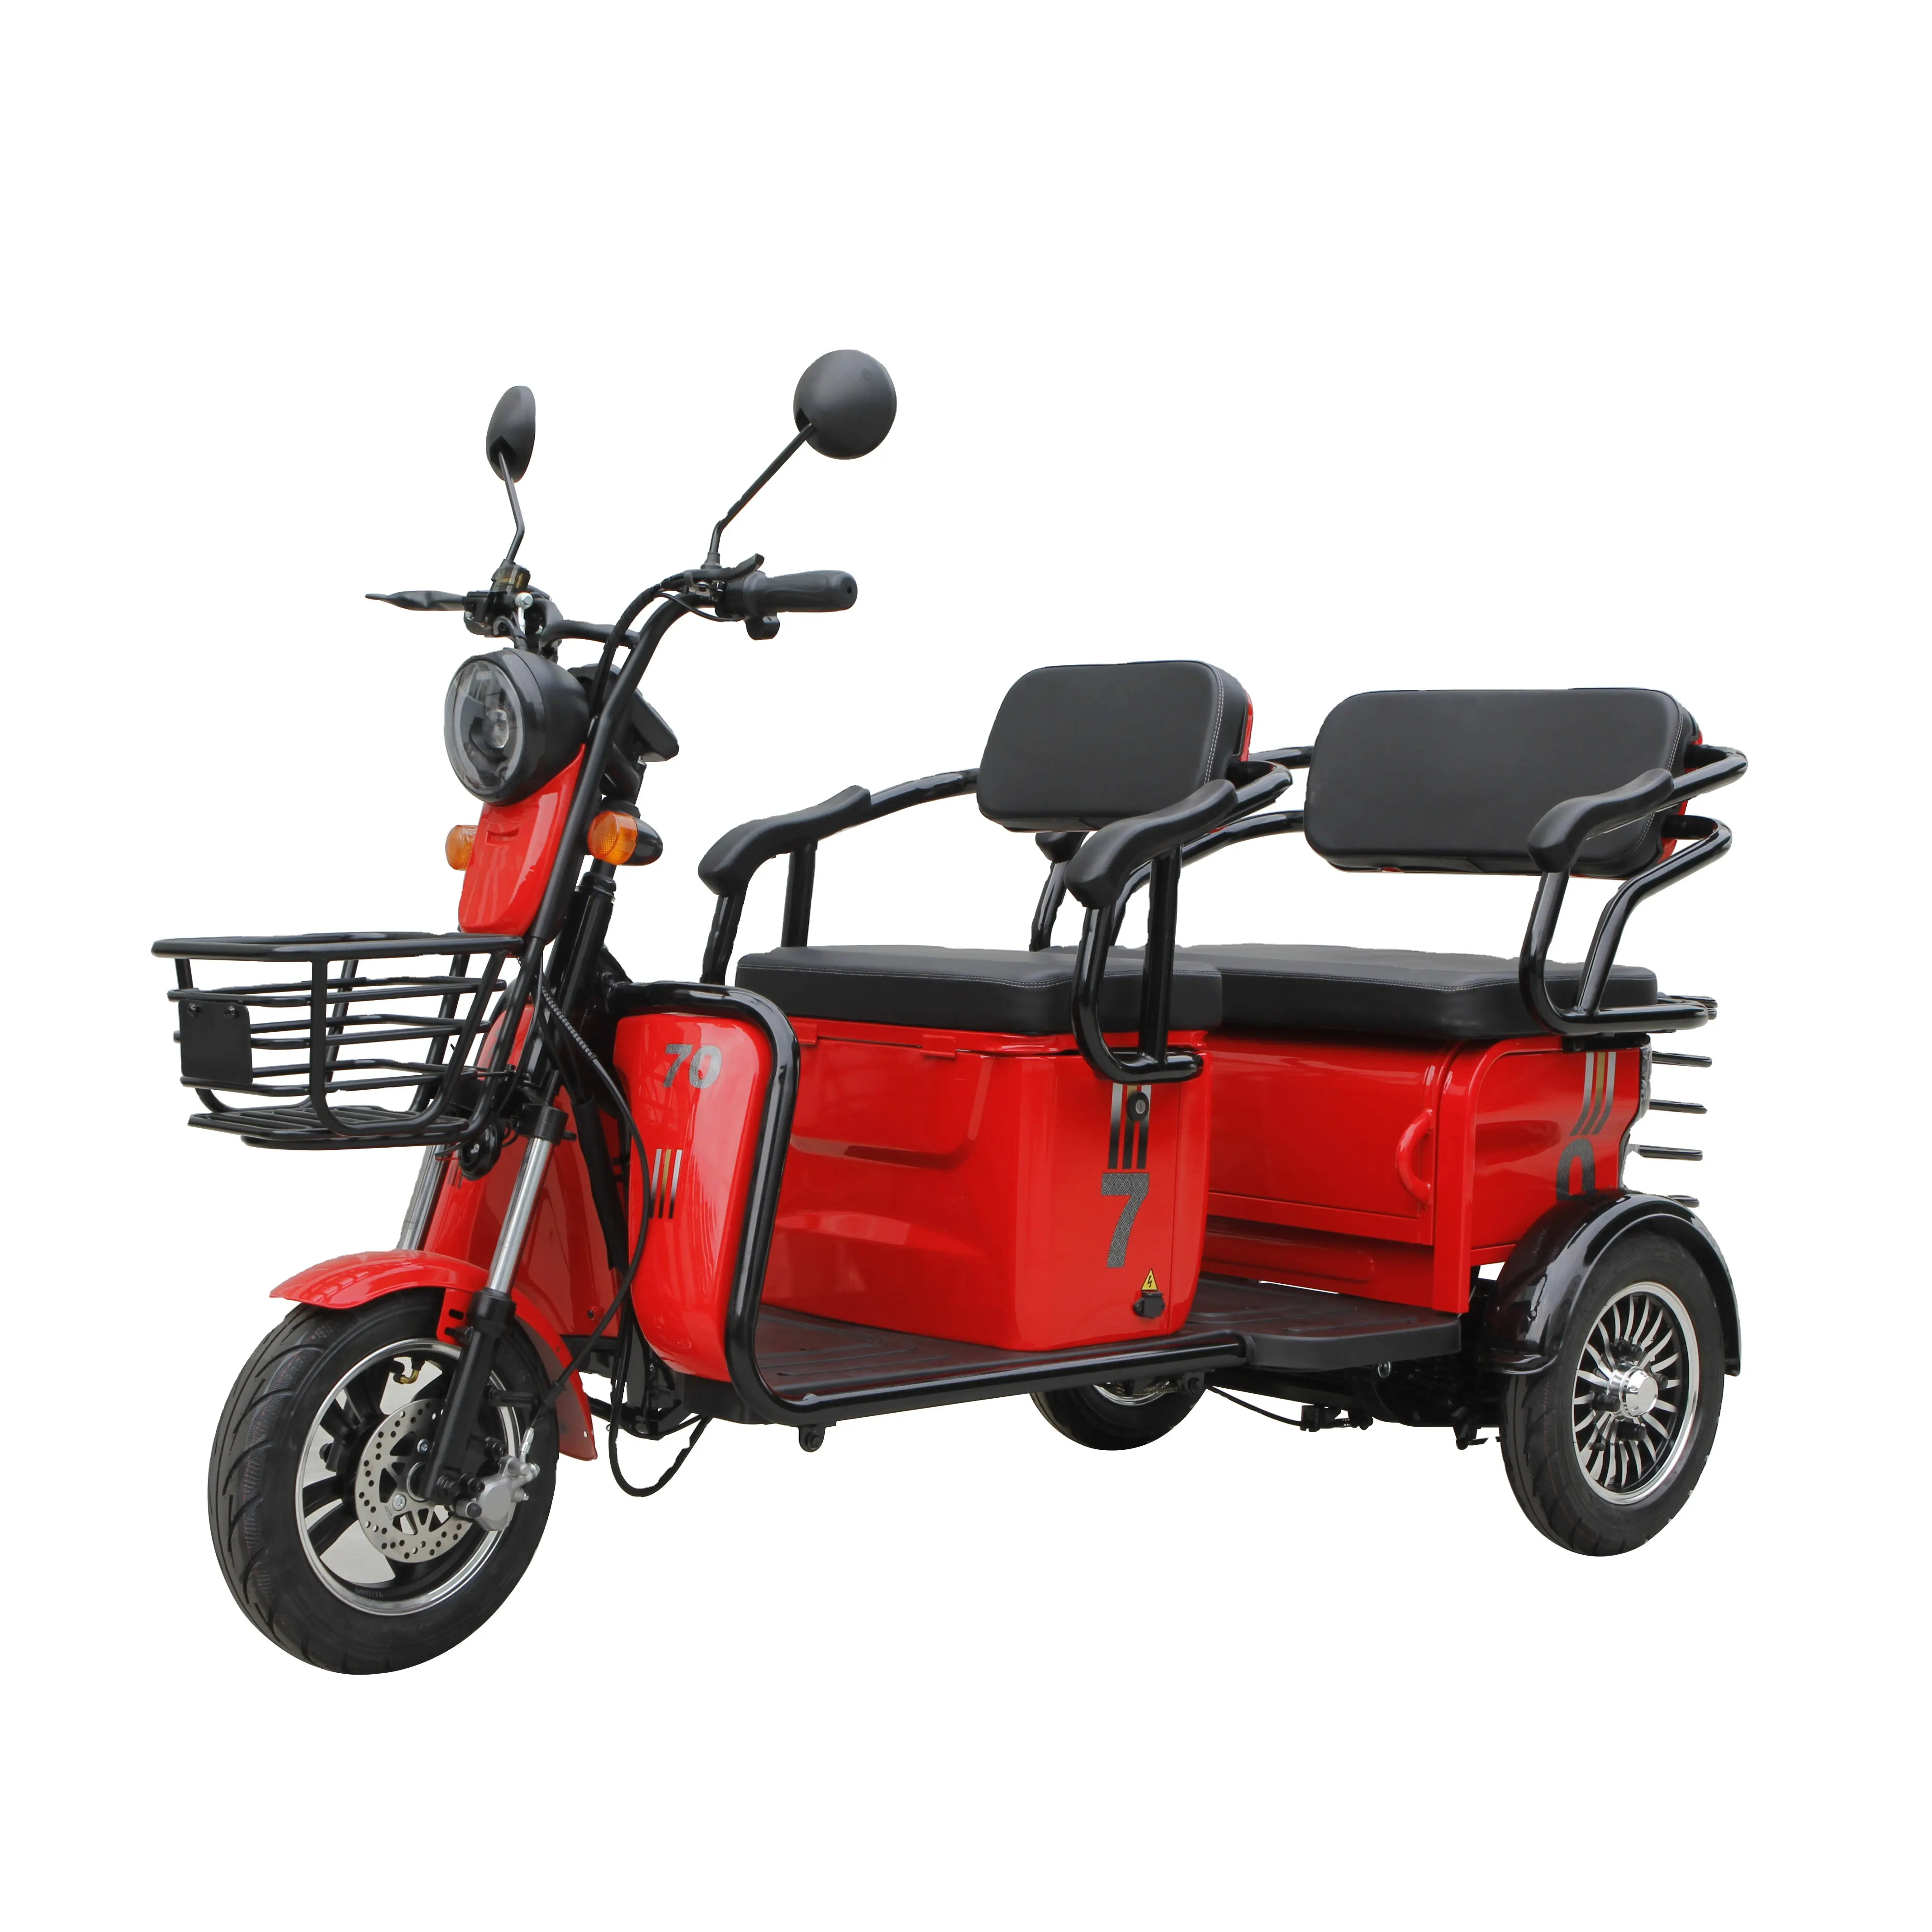 SAIGE EEC COC 25 km/h elektrisches Dreirad und Trike und Walze für ältere Menschen